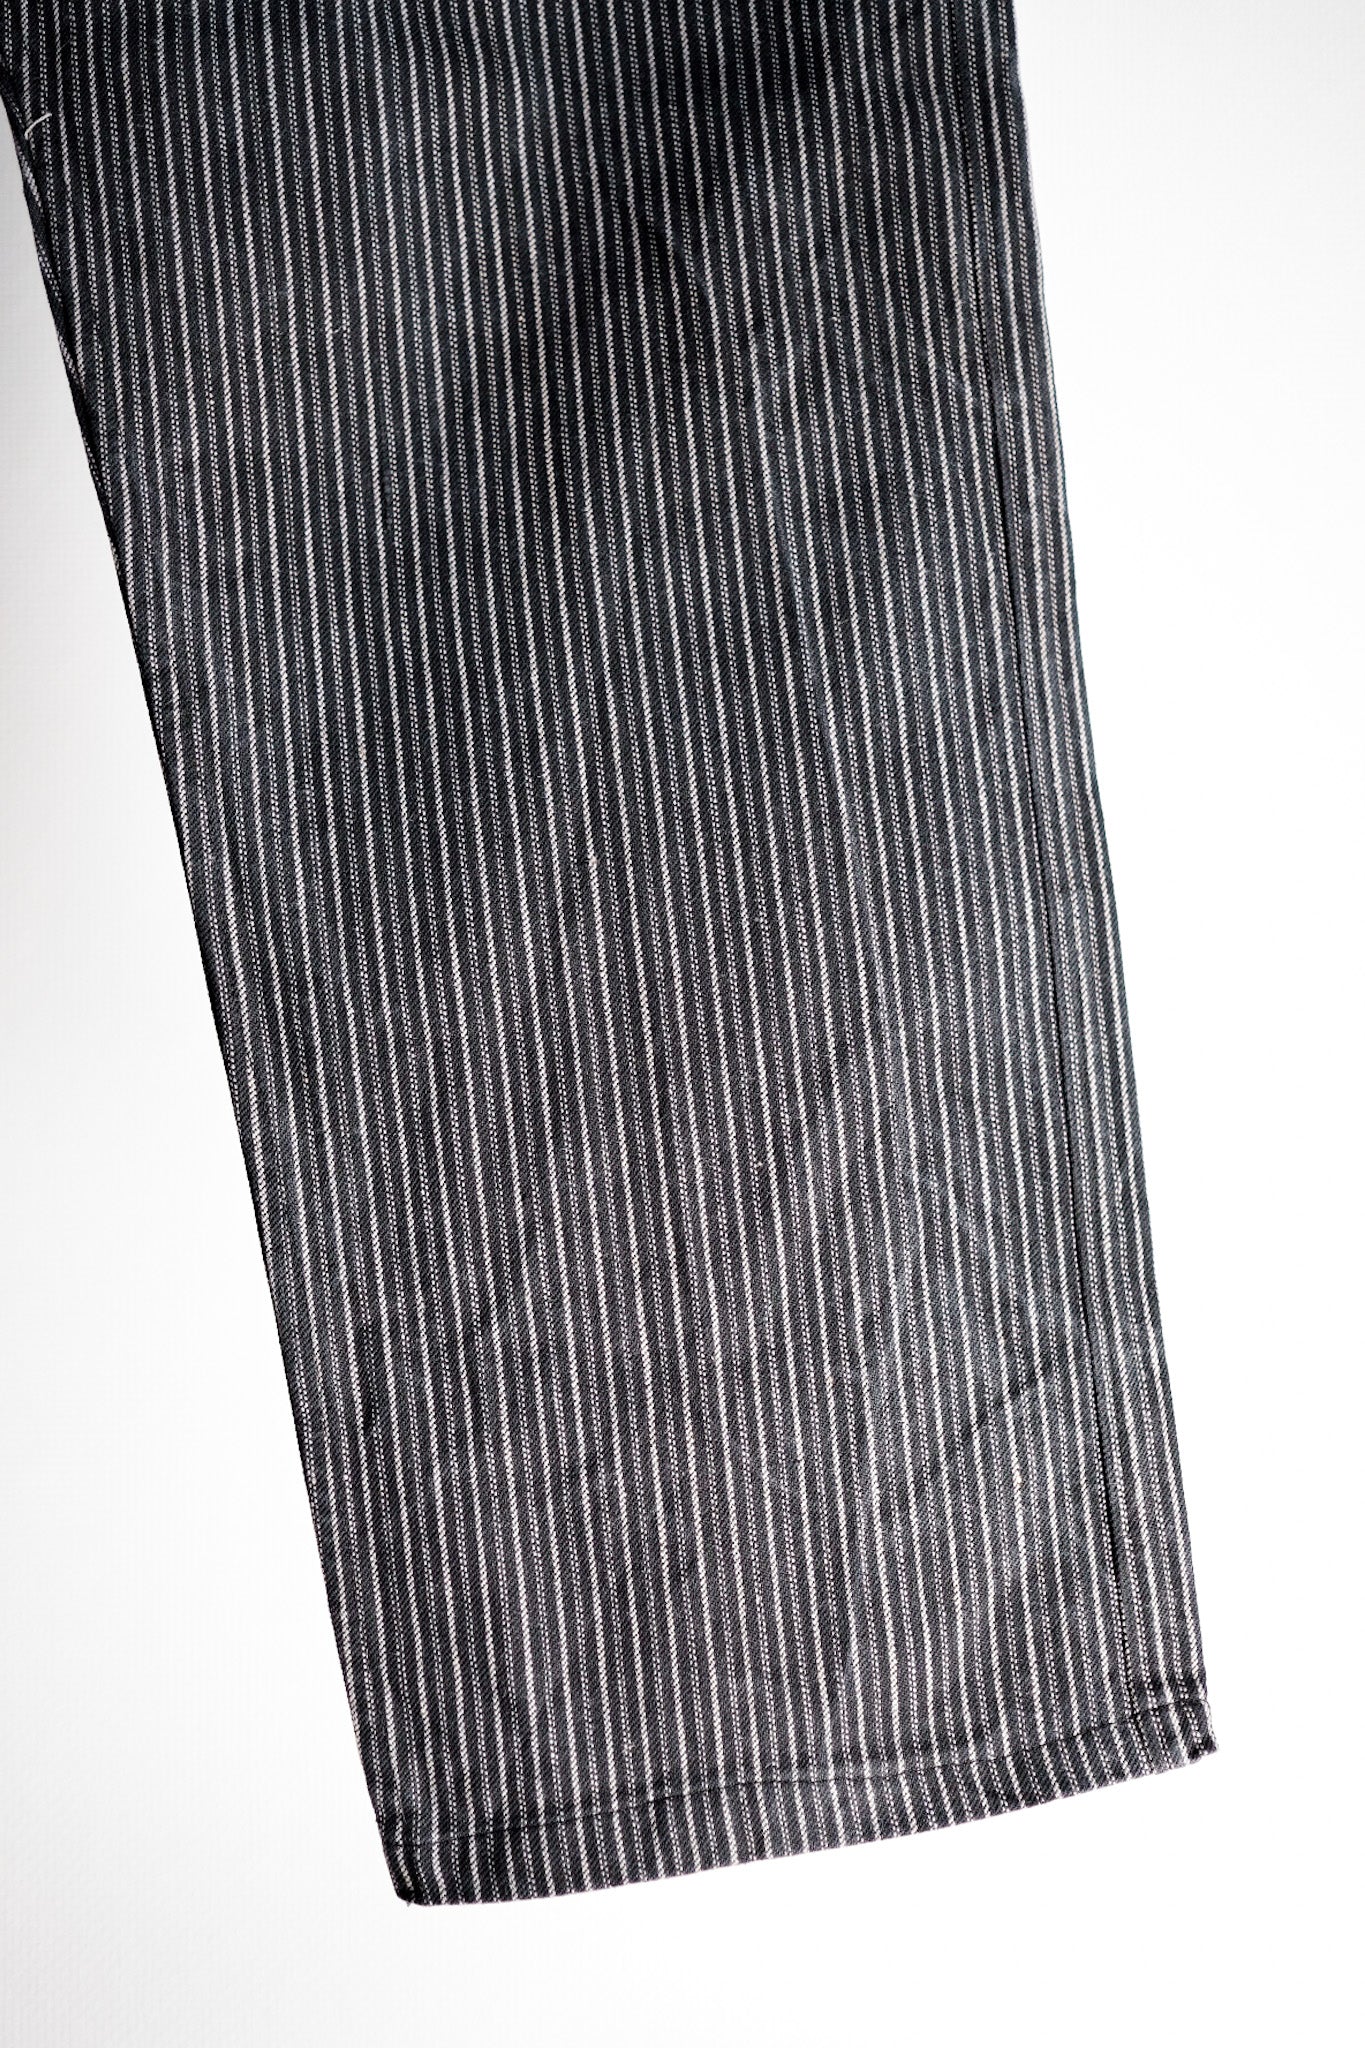 【~ 40'S】 Pantalon de travail à rayures en coton vintage français